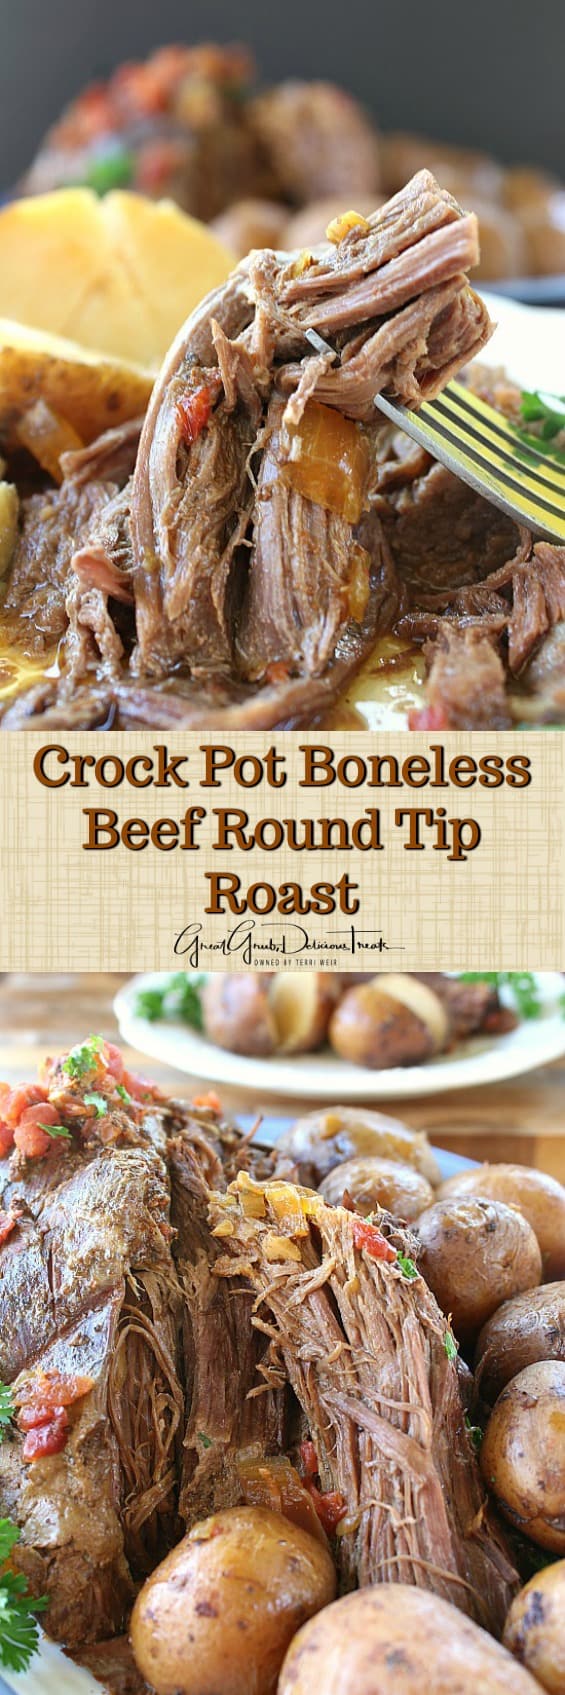 Crock Pot Boneless Beef Round Tip Roast